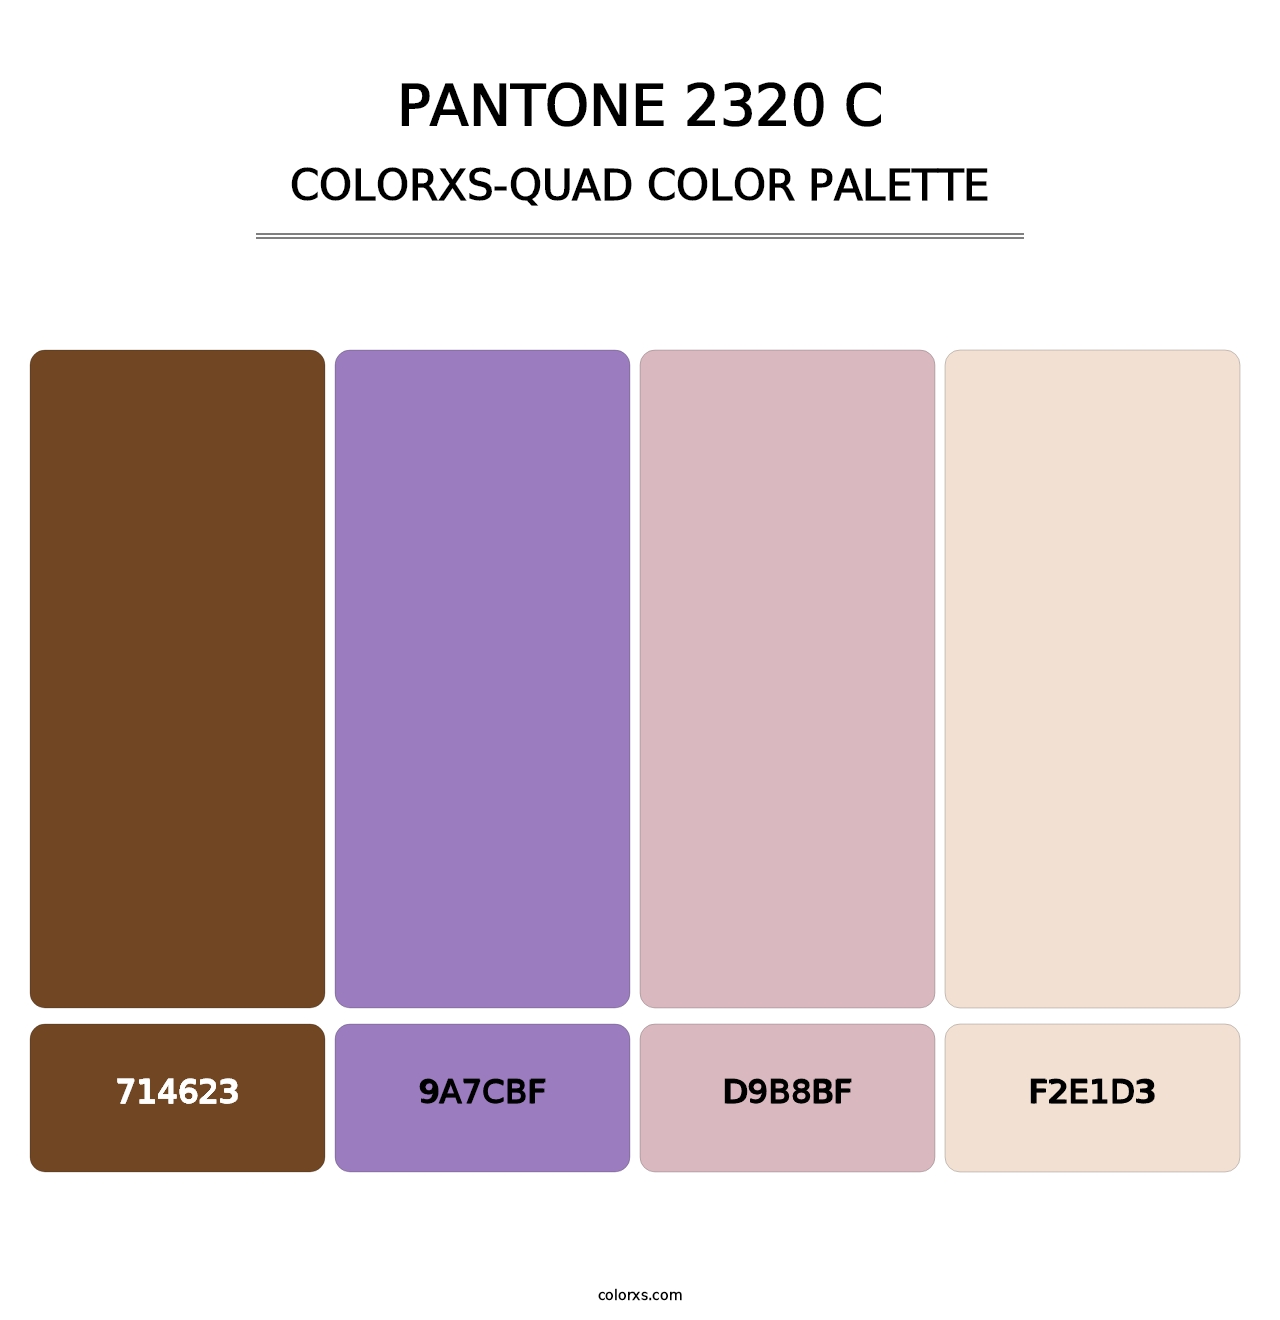 PANTONE 2320 C - Colorxs Quad Palette